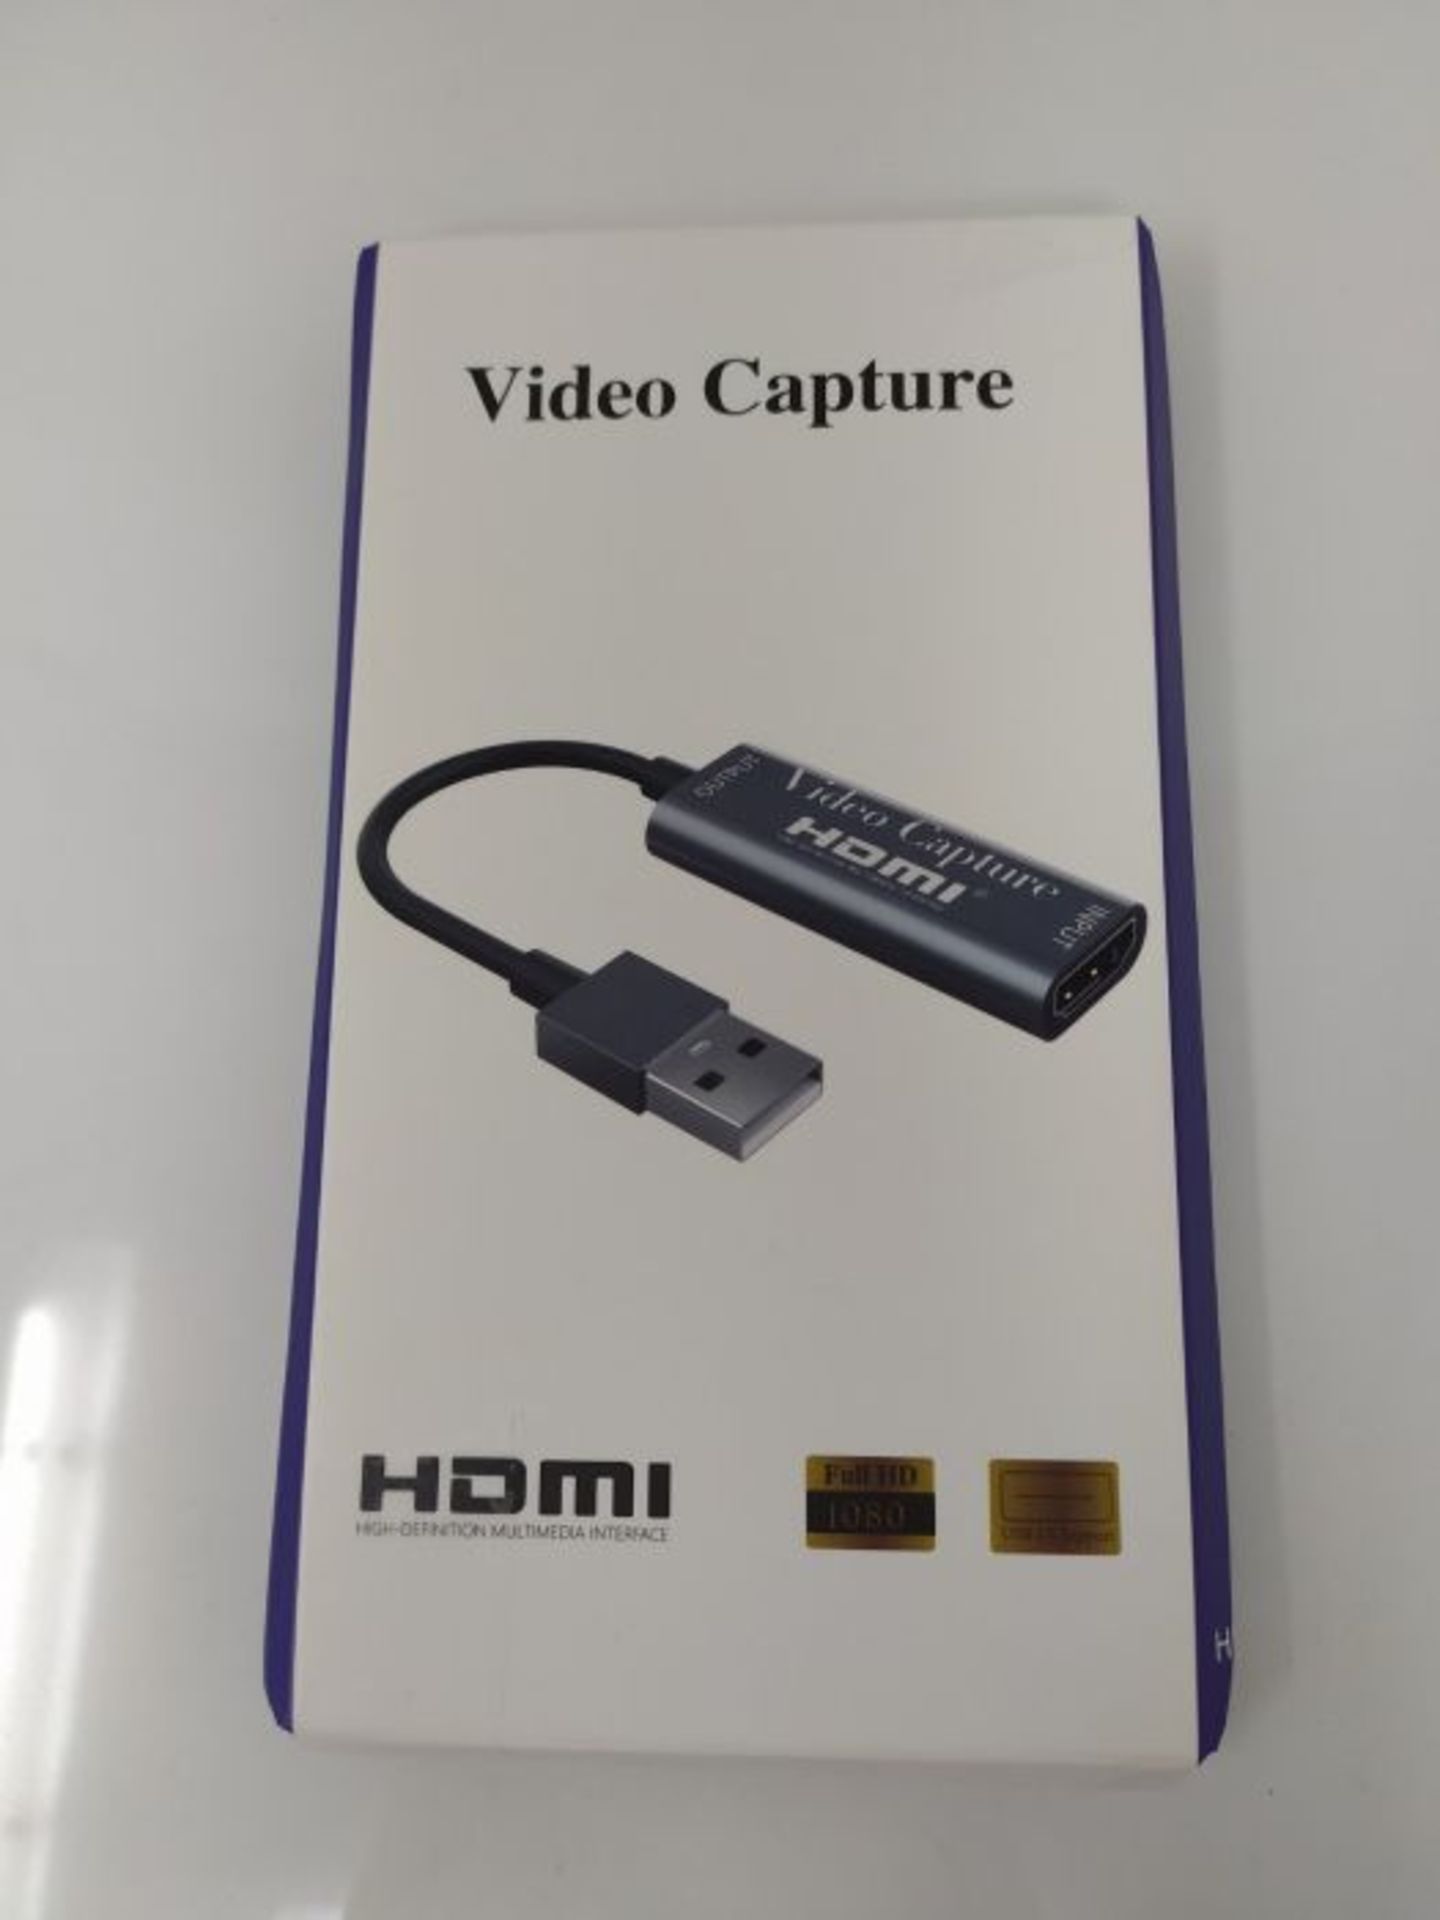 KDR Cartes de Capture Audio Vidéo Hdmi vers Usb3.0 4k 1080p Enregistrement via Camés - Image 2 of 3